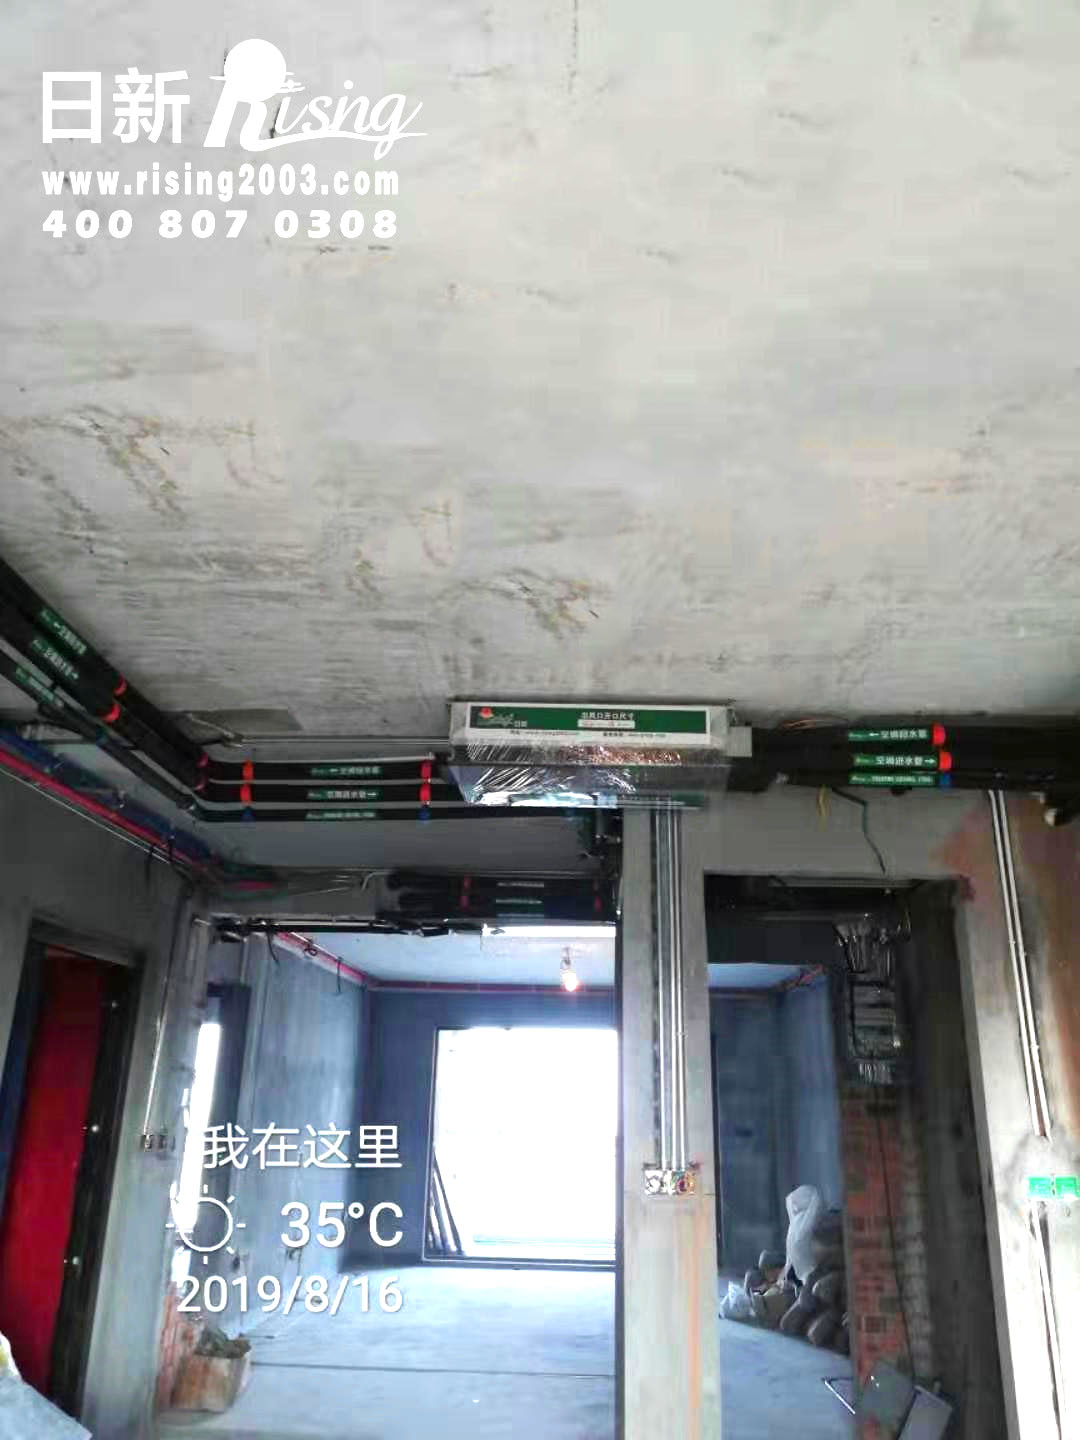 中海御道路一号风冷热泵系统空调阶段